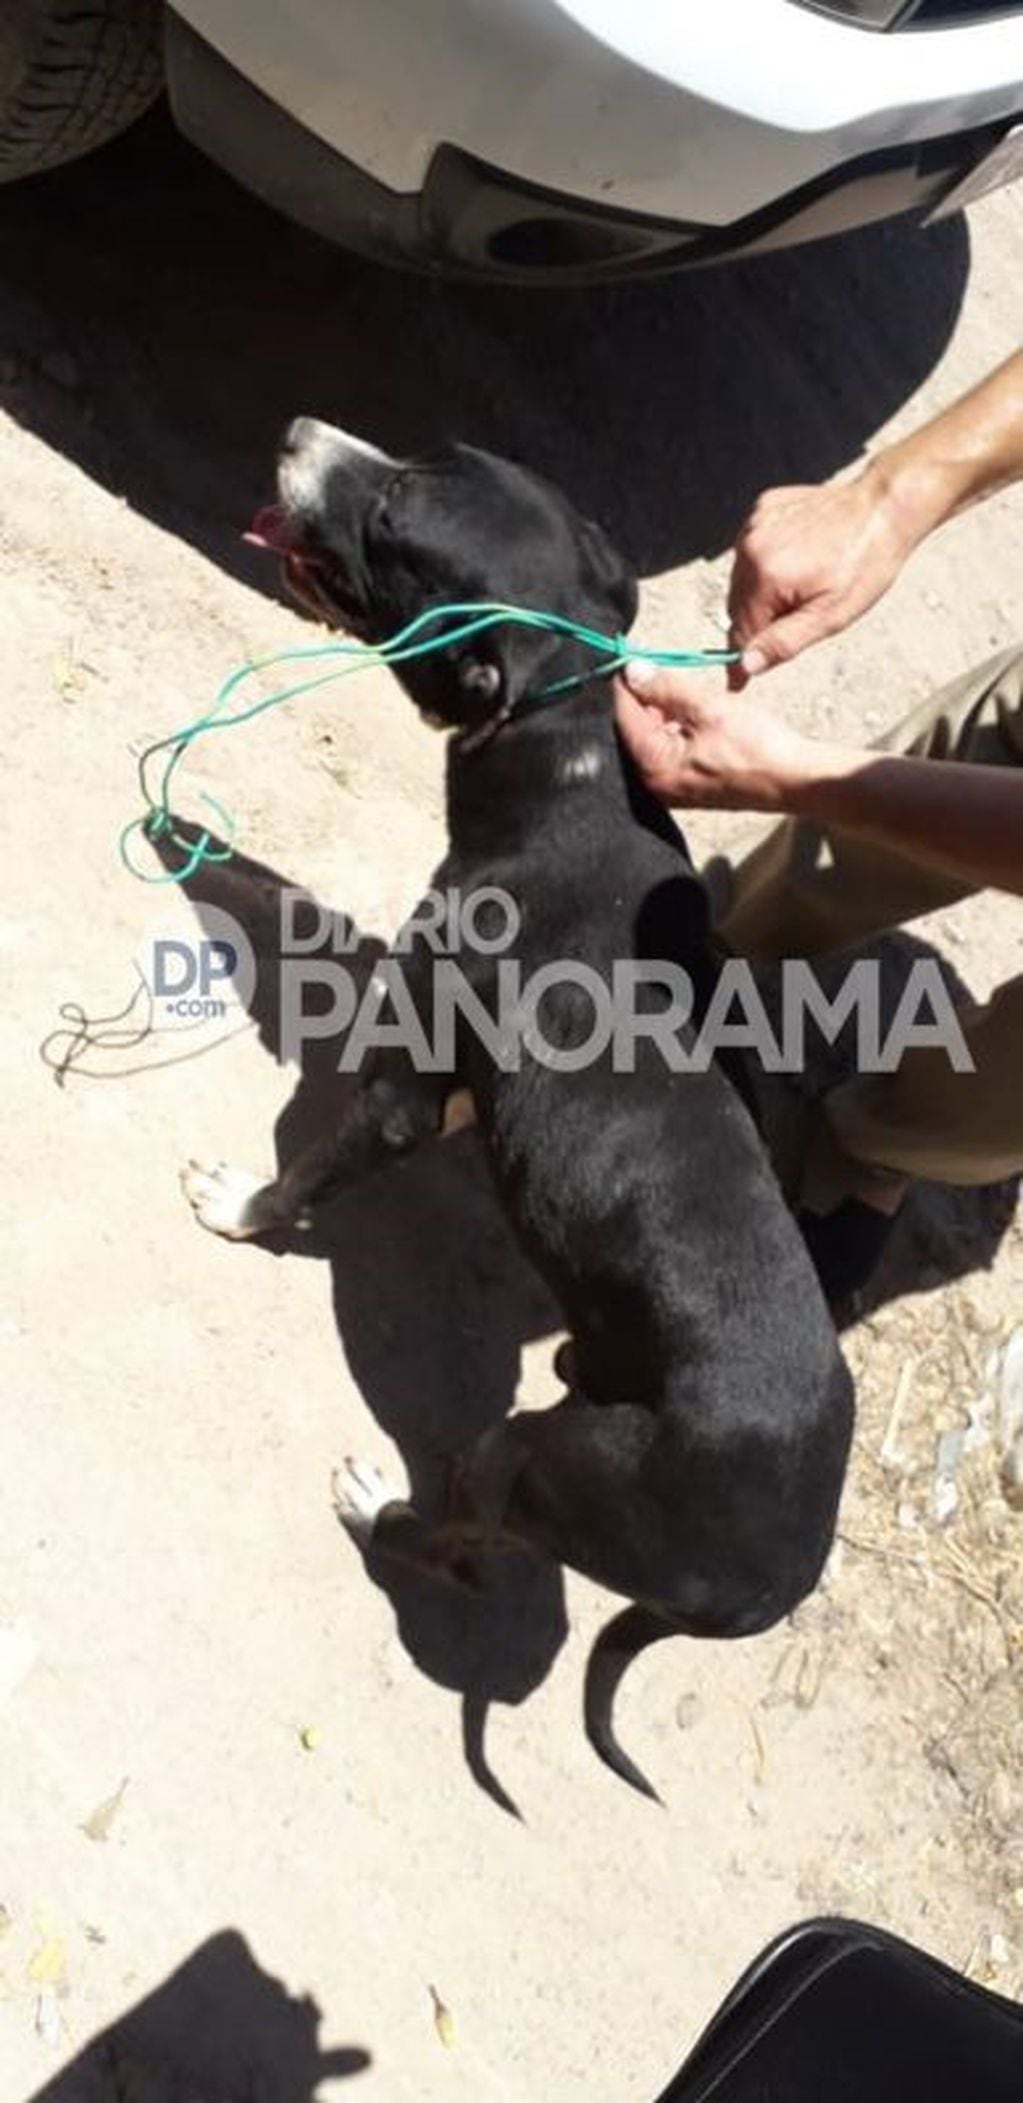 El perrito fue rescatado y se recupera en un Refugio (Foto: Diario Panorama)